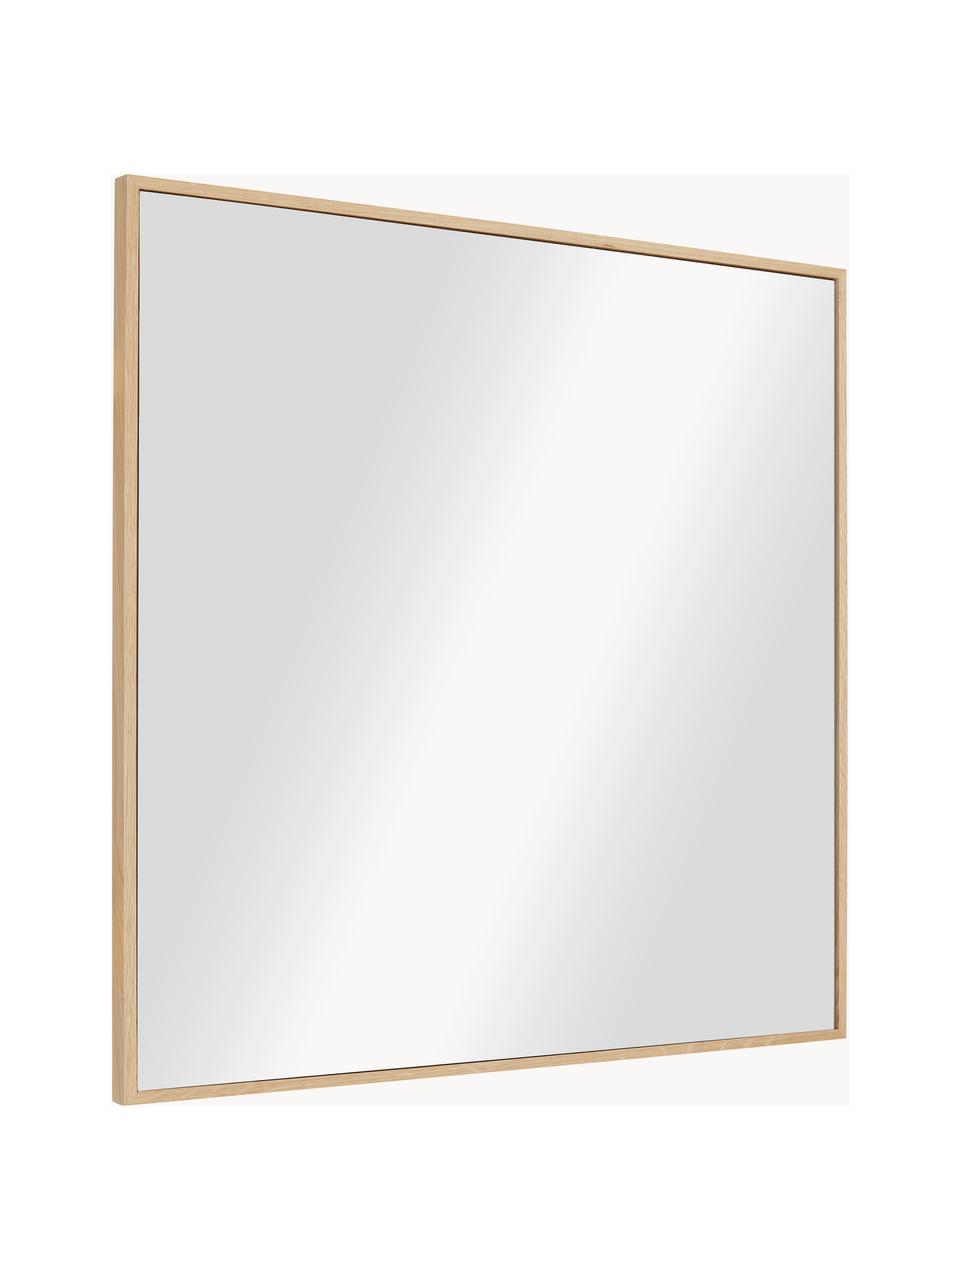 Čtvercové nástěnné zrcadlo  s hnědým dřevěným rámem Avery, Dubové dřevo, Š 55 cm, V 55 cm